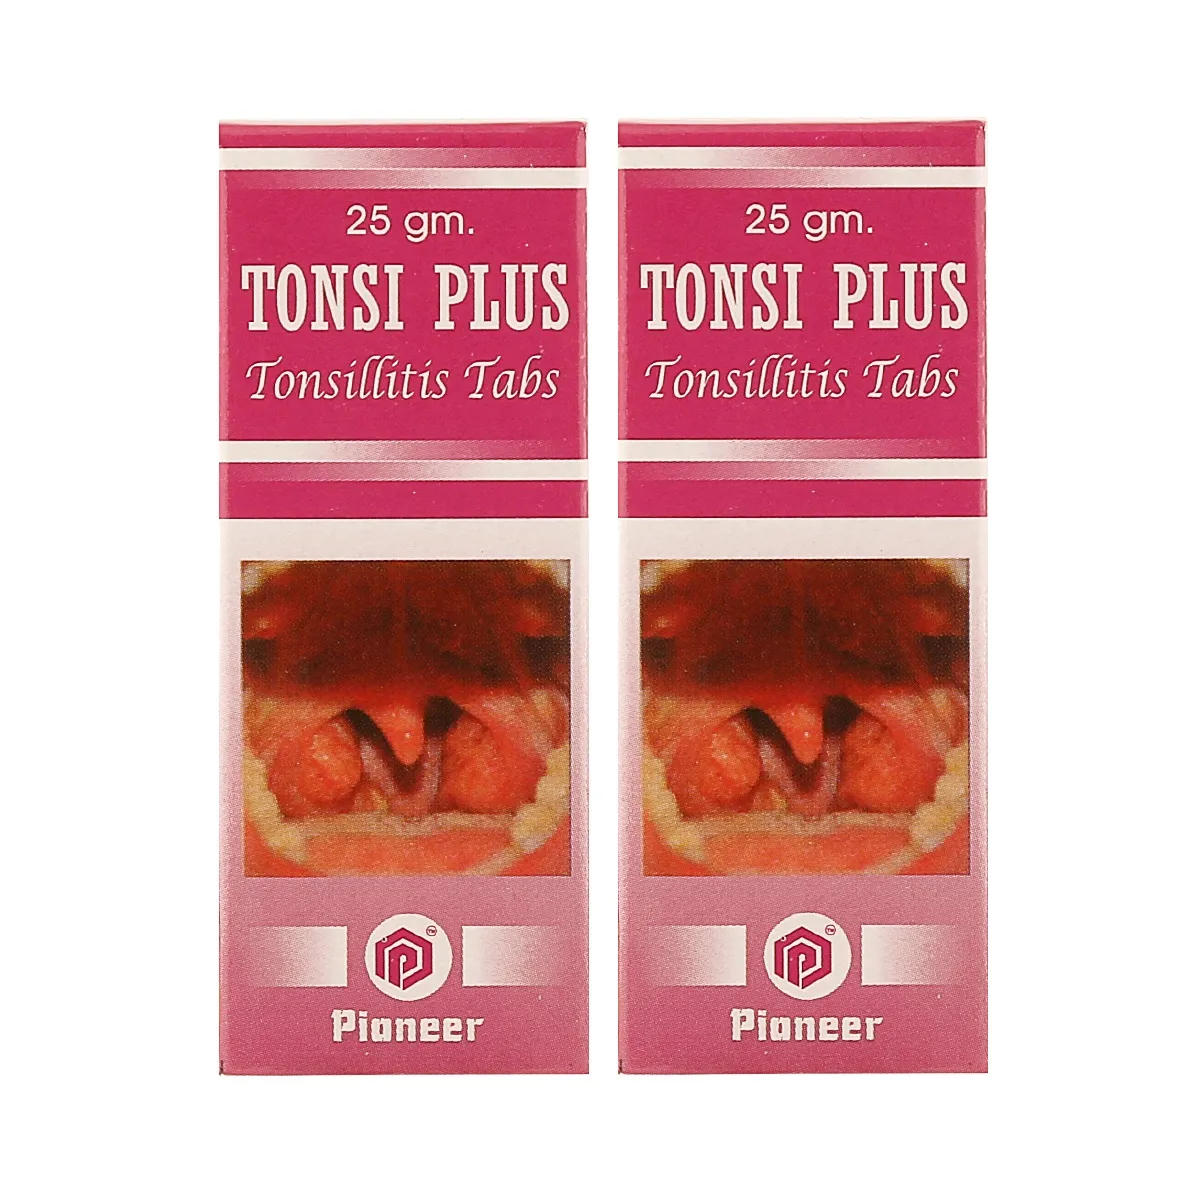 Pioneer Tonsi Plus Tablets 25g, Pack of 2